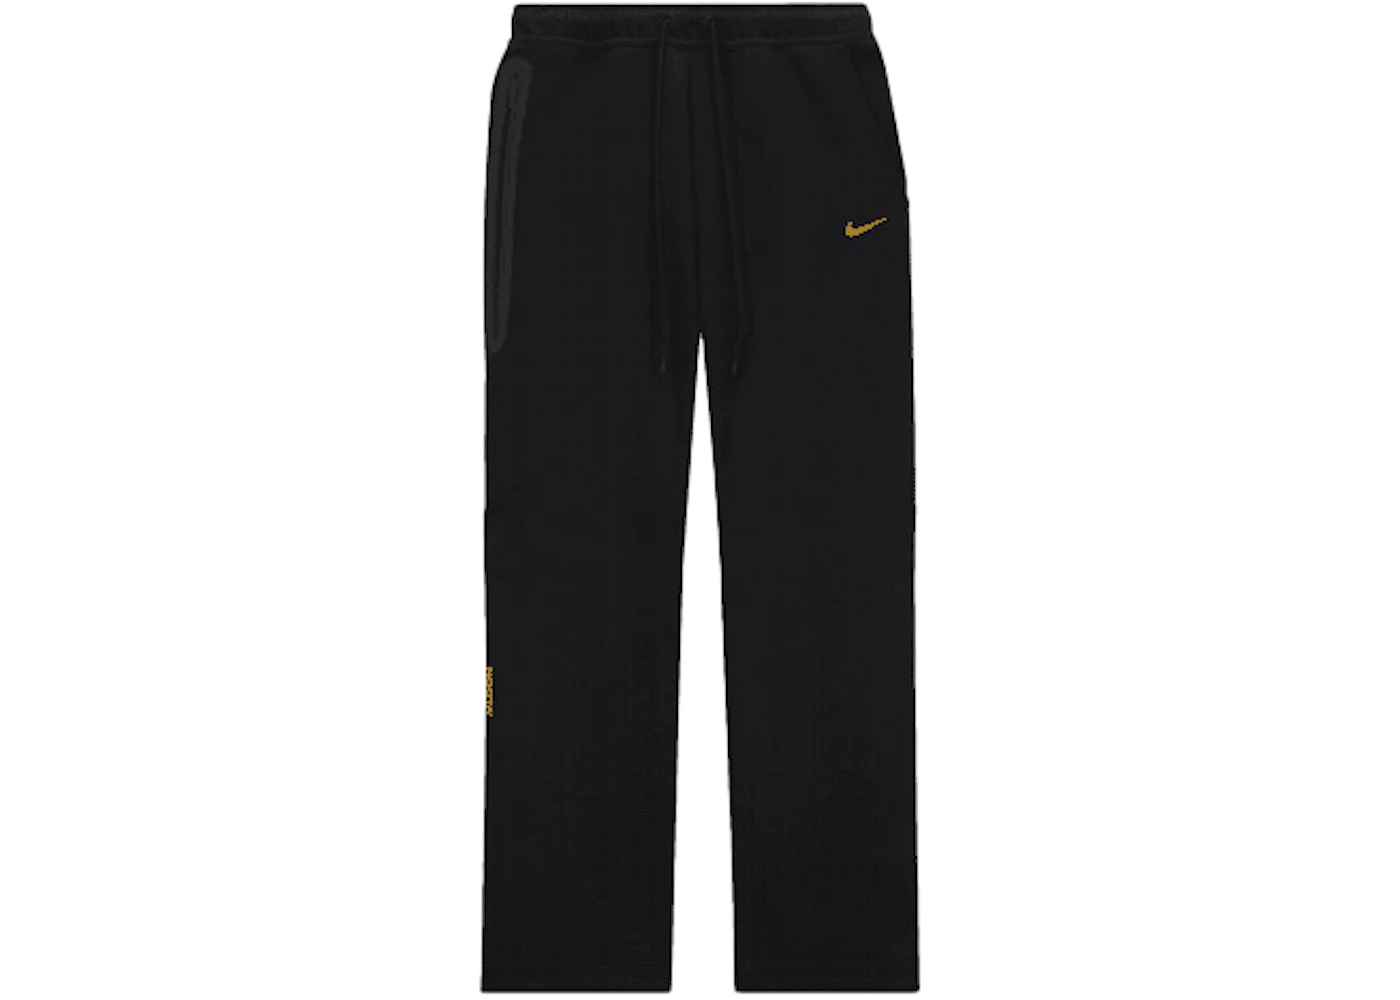 Pantalon de survêtement à ourlets ouverts NOCTA x Nike Tech Fleece coloris noir